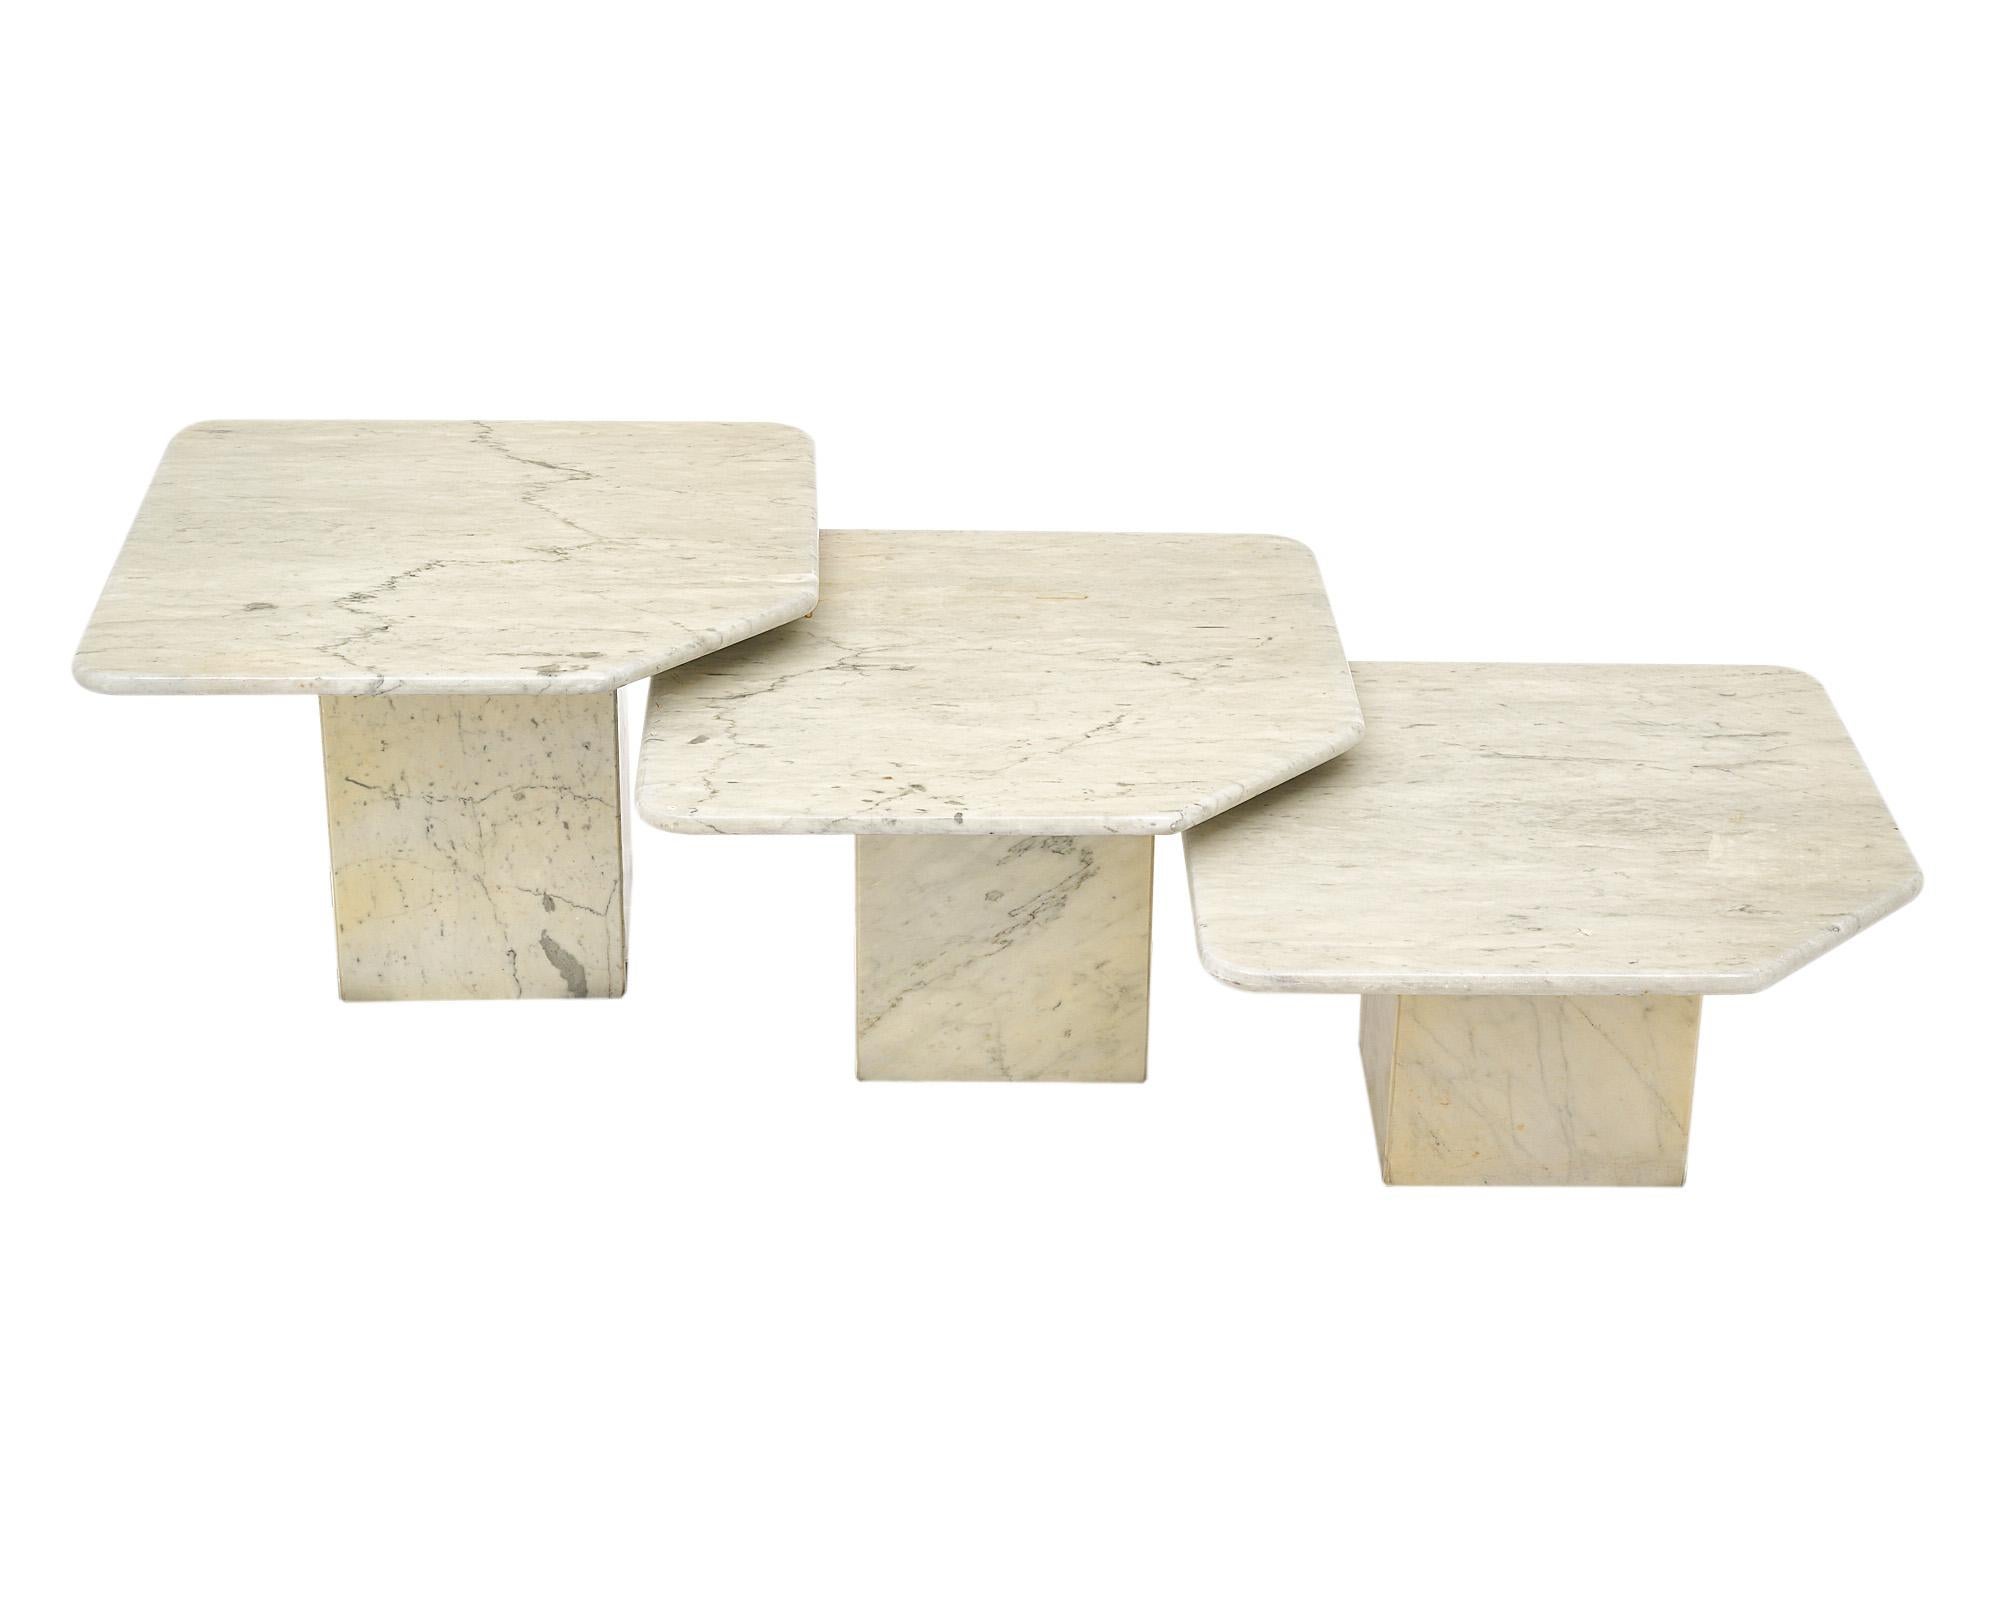 Ensemble de trois tables gigognes en marbre de Carrare. Chaque table repose sur une base carrée en marbre. Les plateaux en marbre sont de forme carrée avec des coins arrondis et chacun d'entre eux présente un coin coupé qui est à la fois graphique